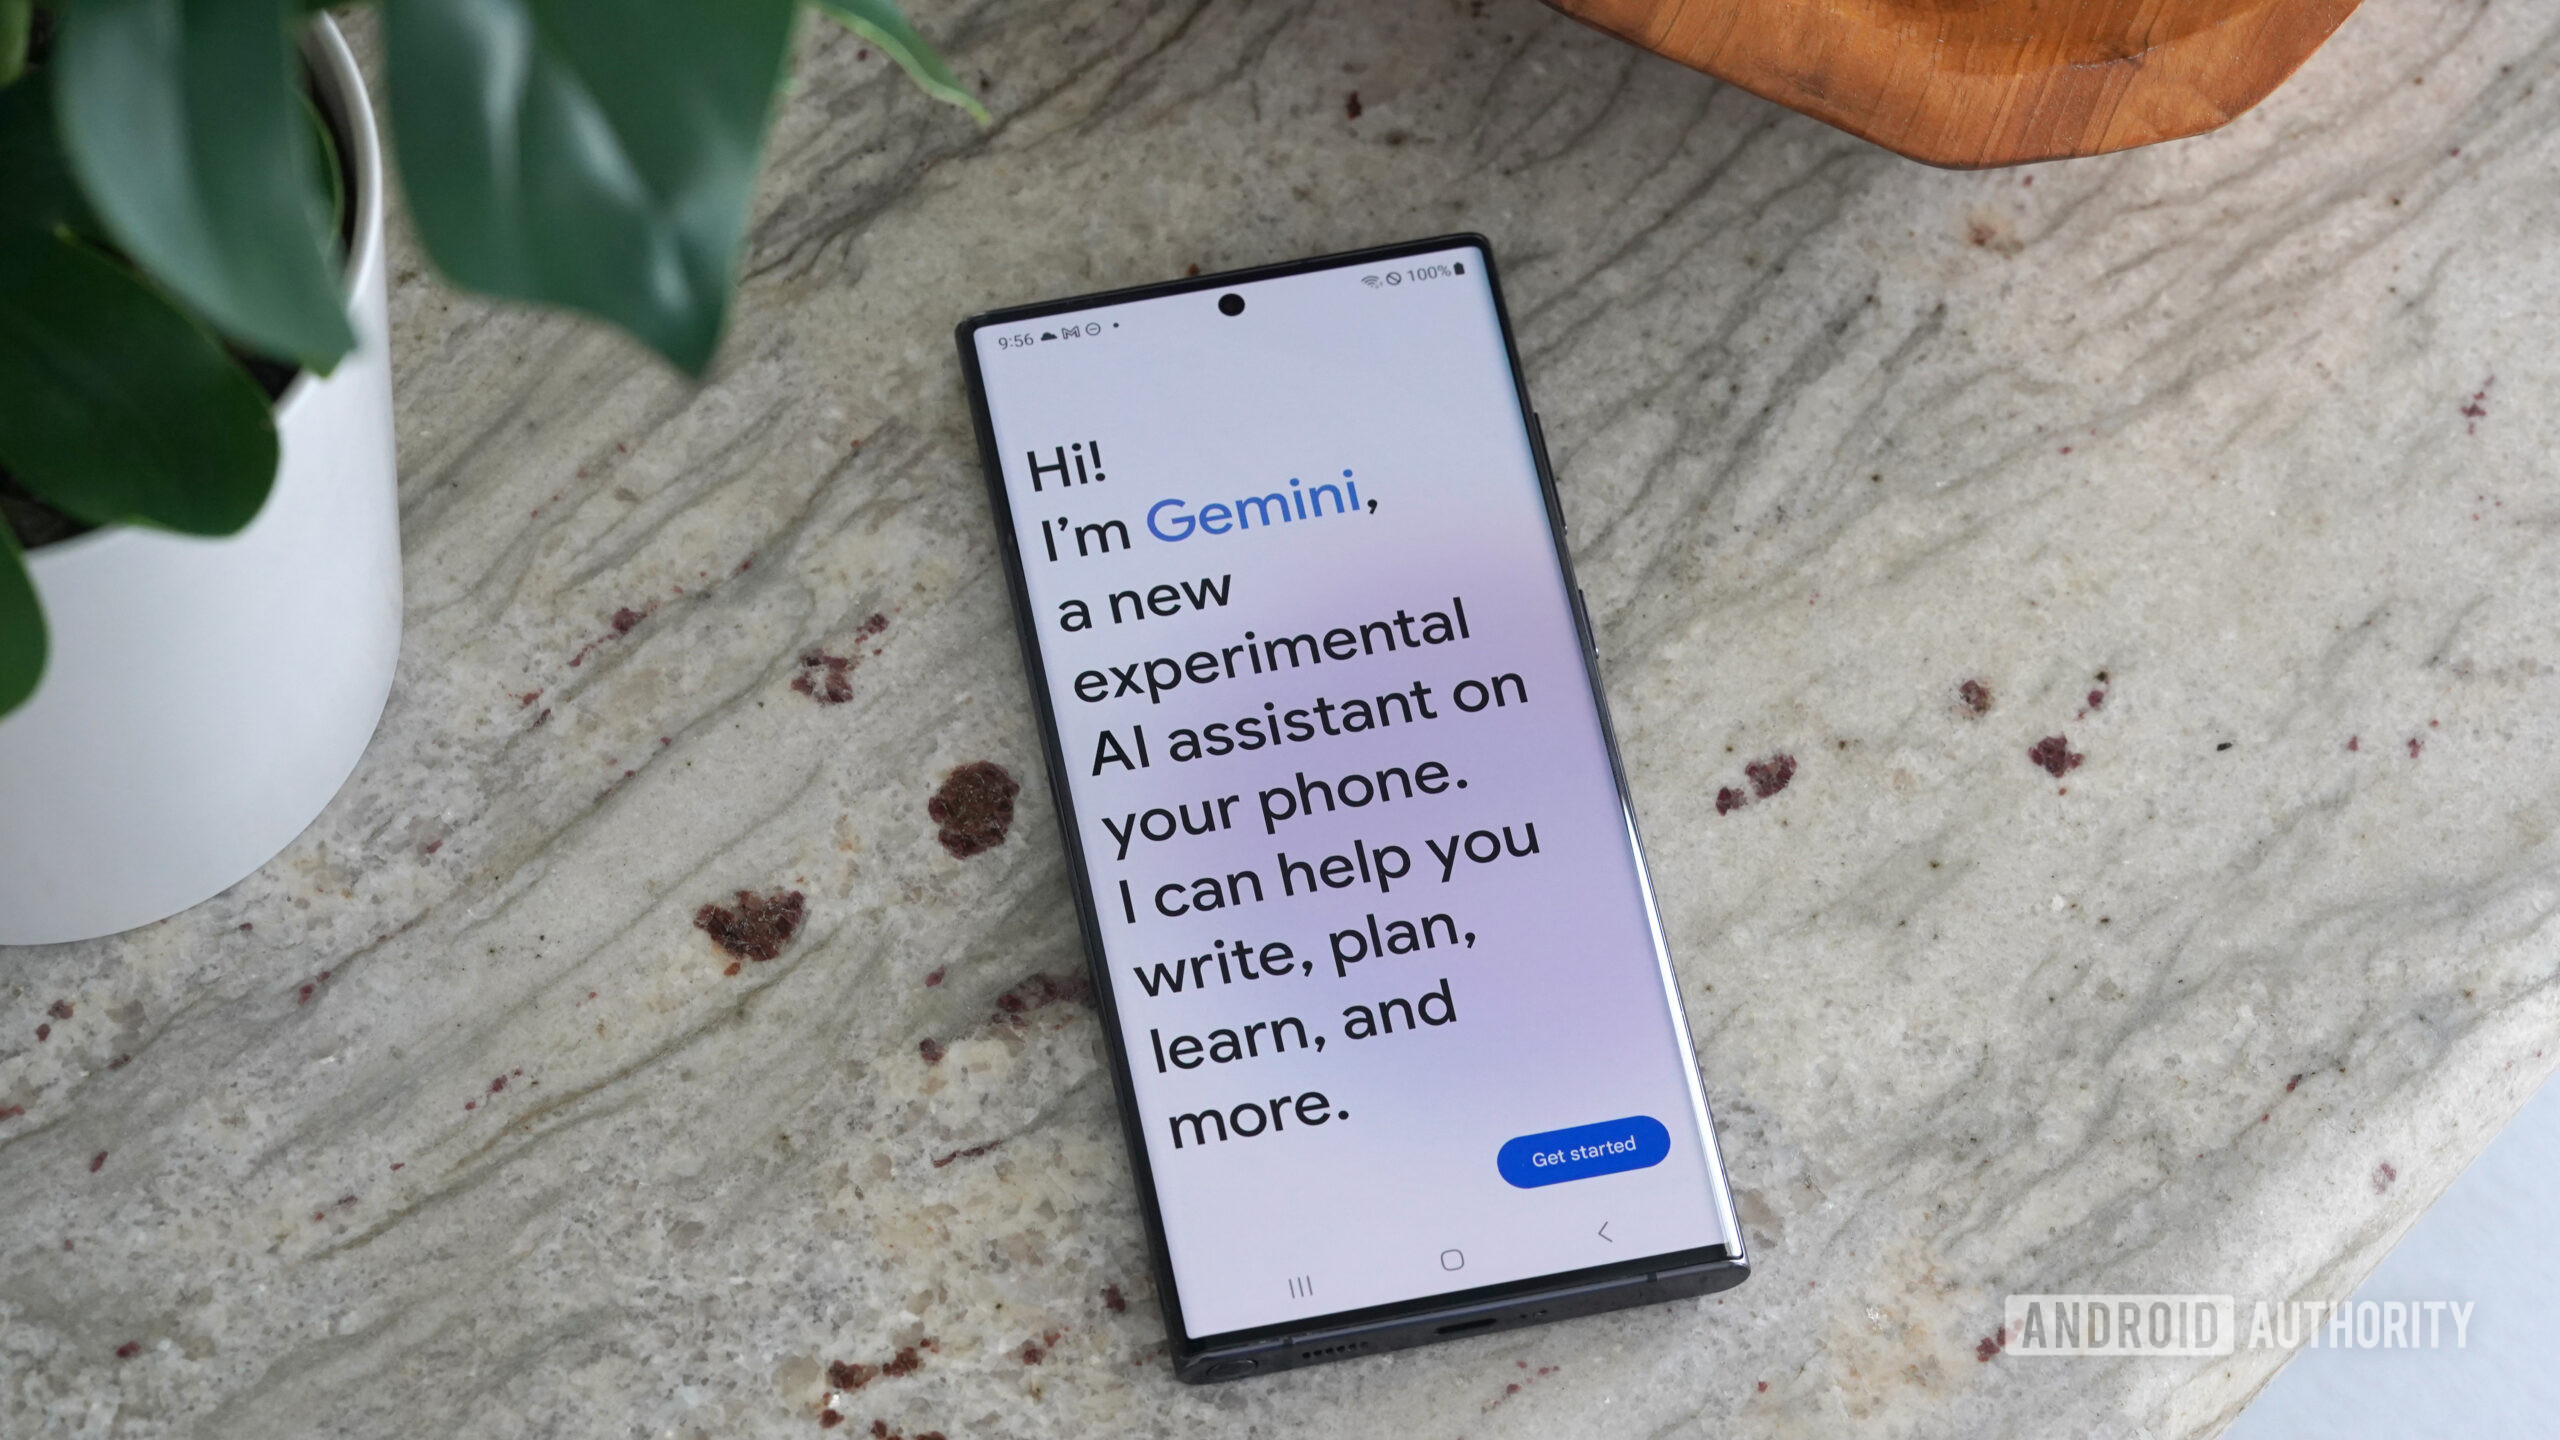 Aplikacja Google Gemini otwiera się z powitaniem od nowego asystenta AI.